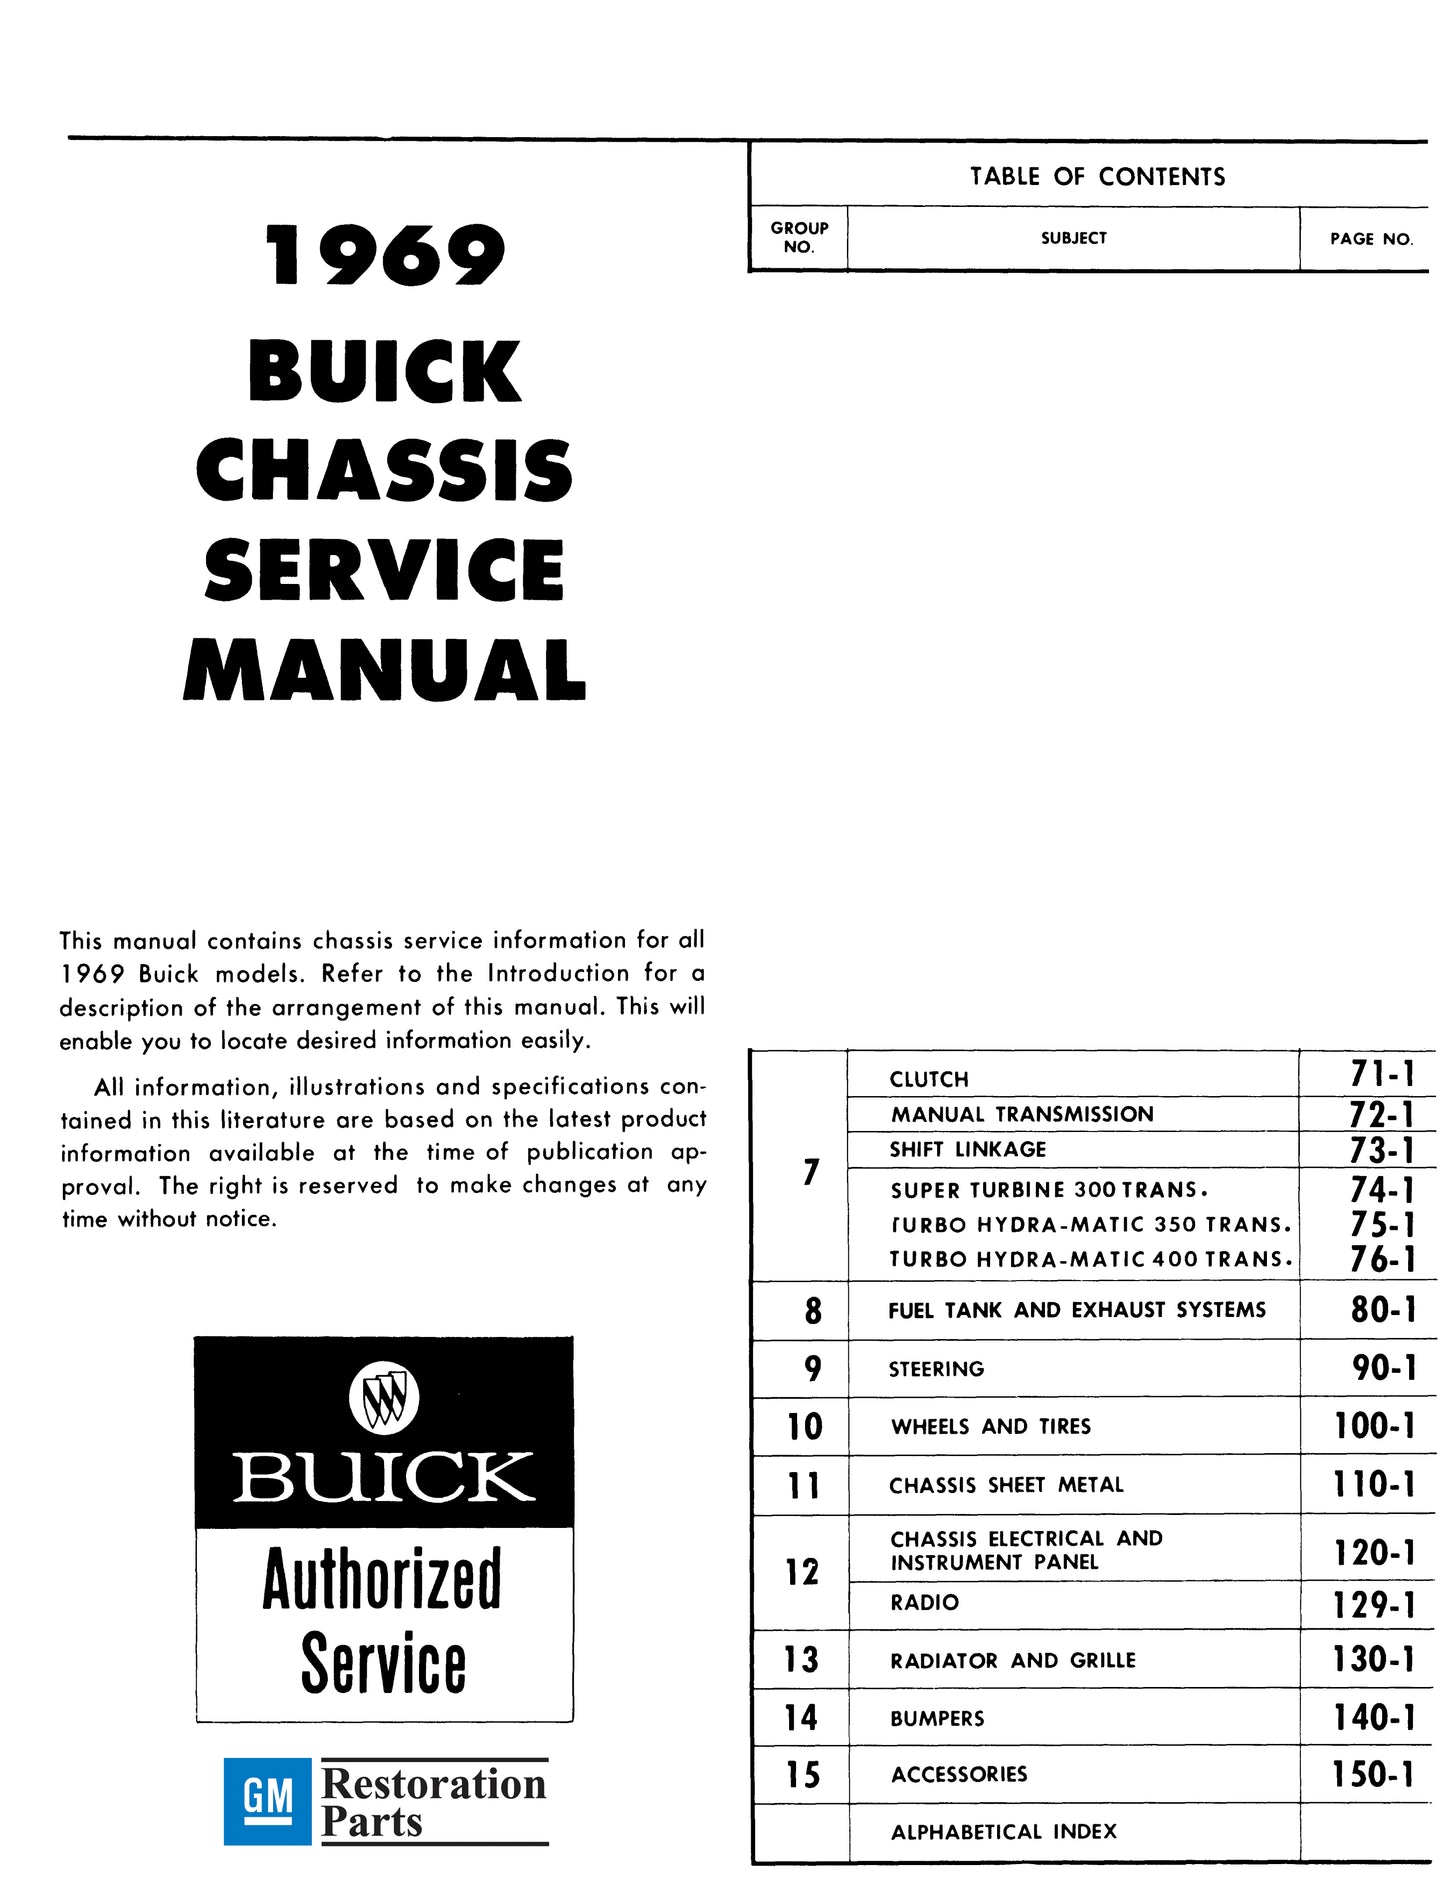 1969 Buick Repair Manual And Body Manual - All Models